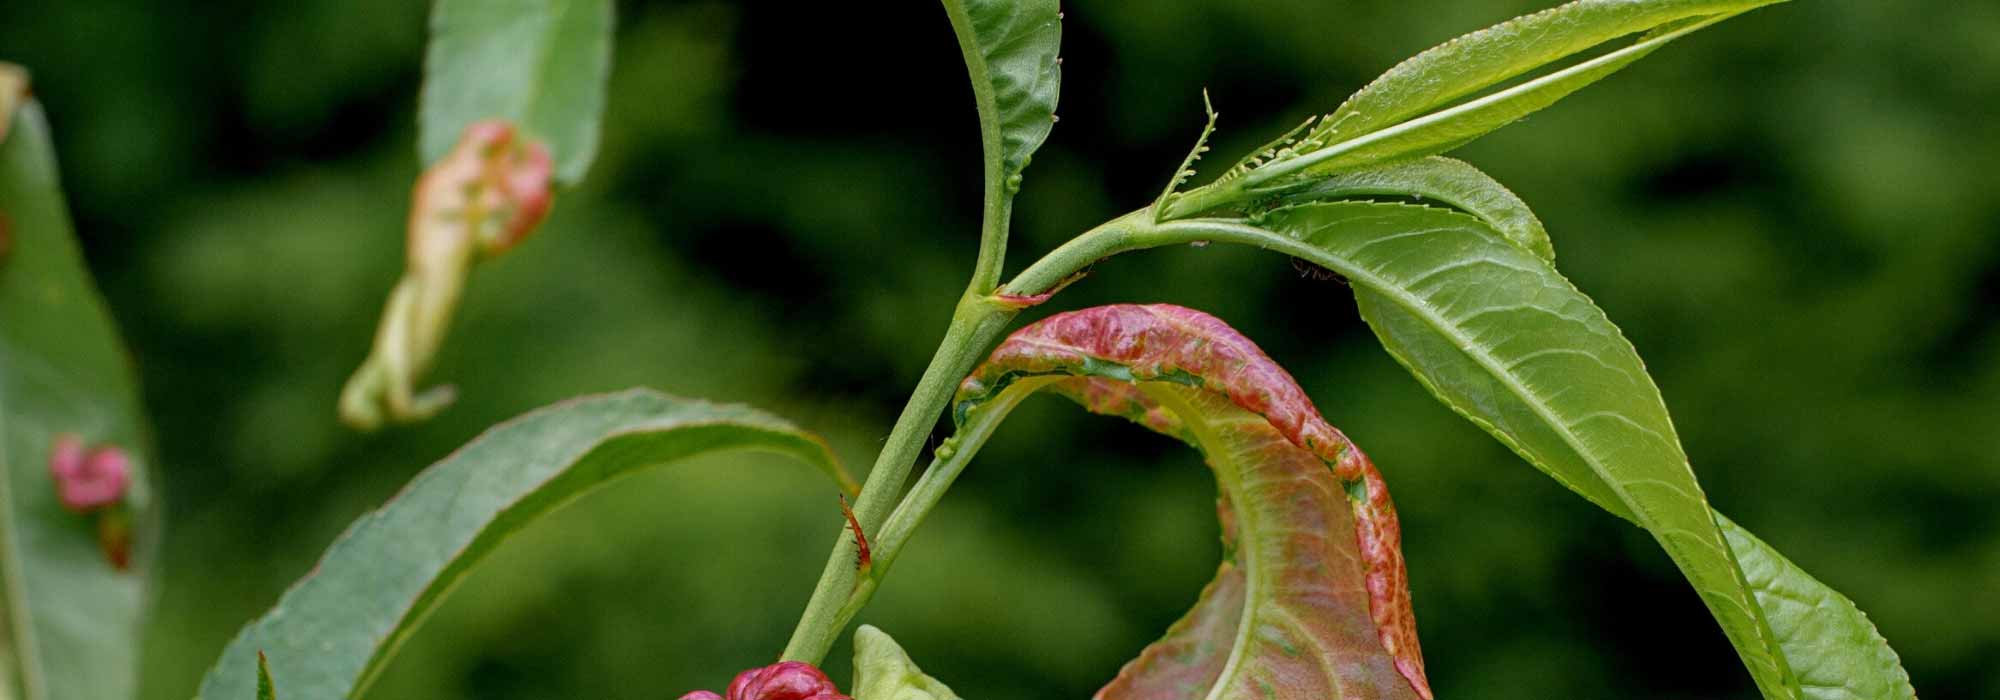 Identifier les principaux insectes parasites et maladies des arbres fruitiers